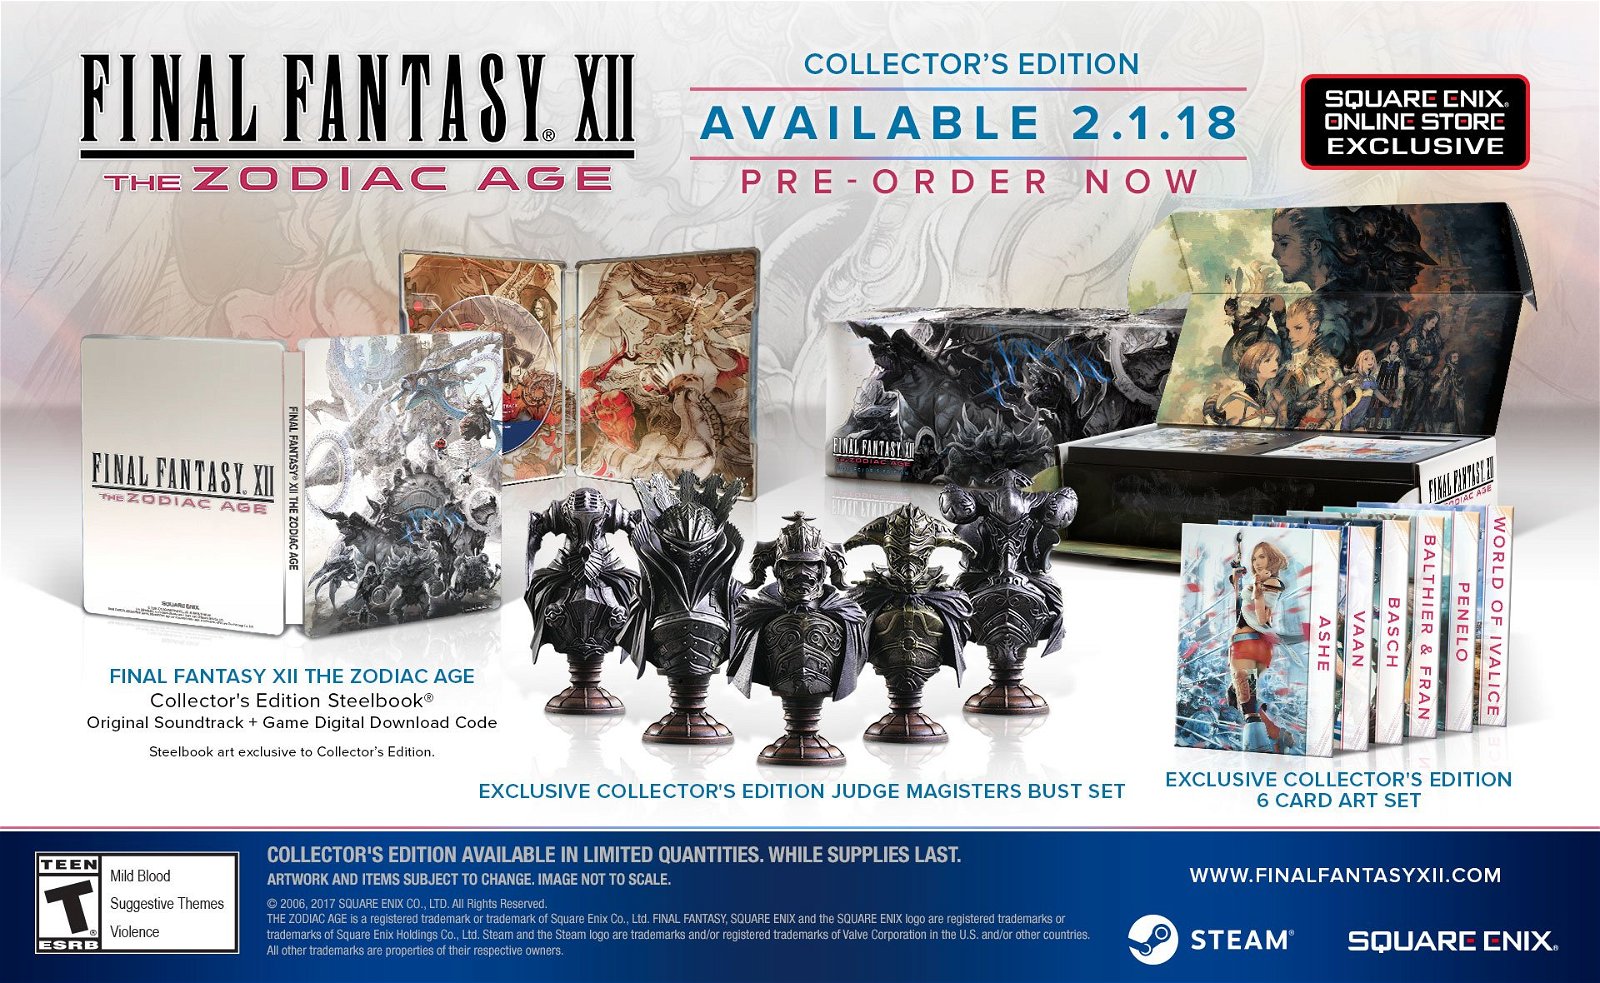 Final Fantasy VII Zodica Age PC collectors Edition